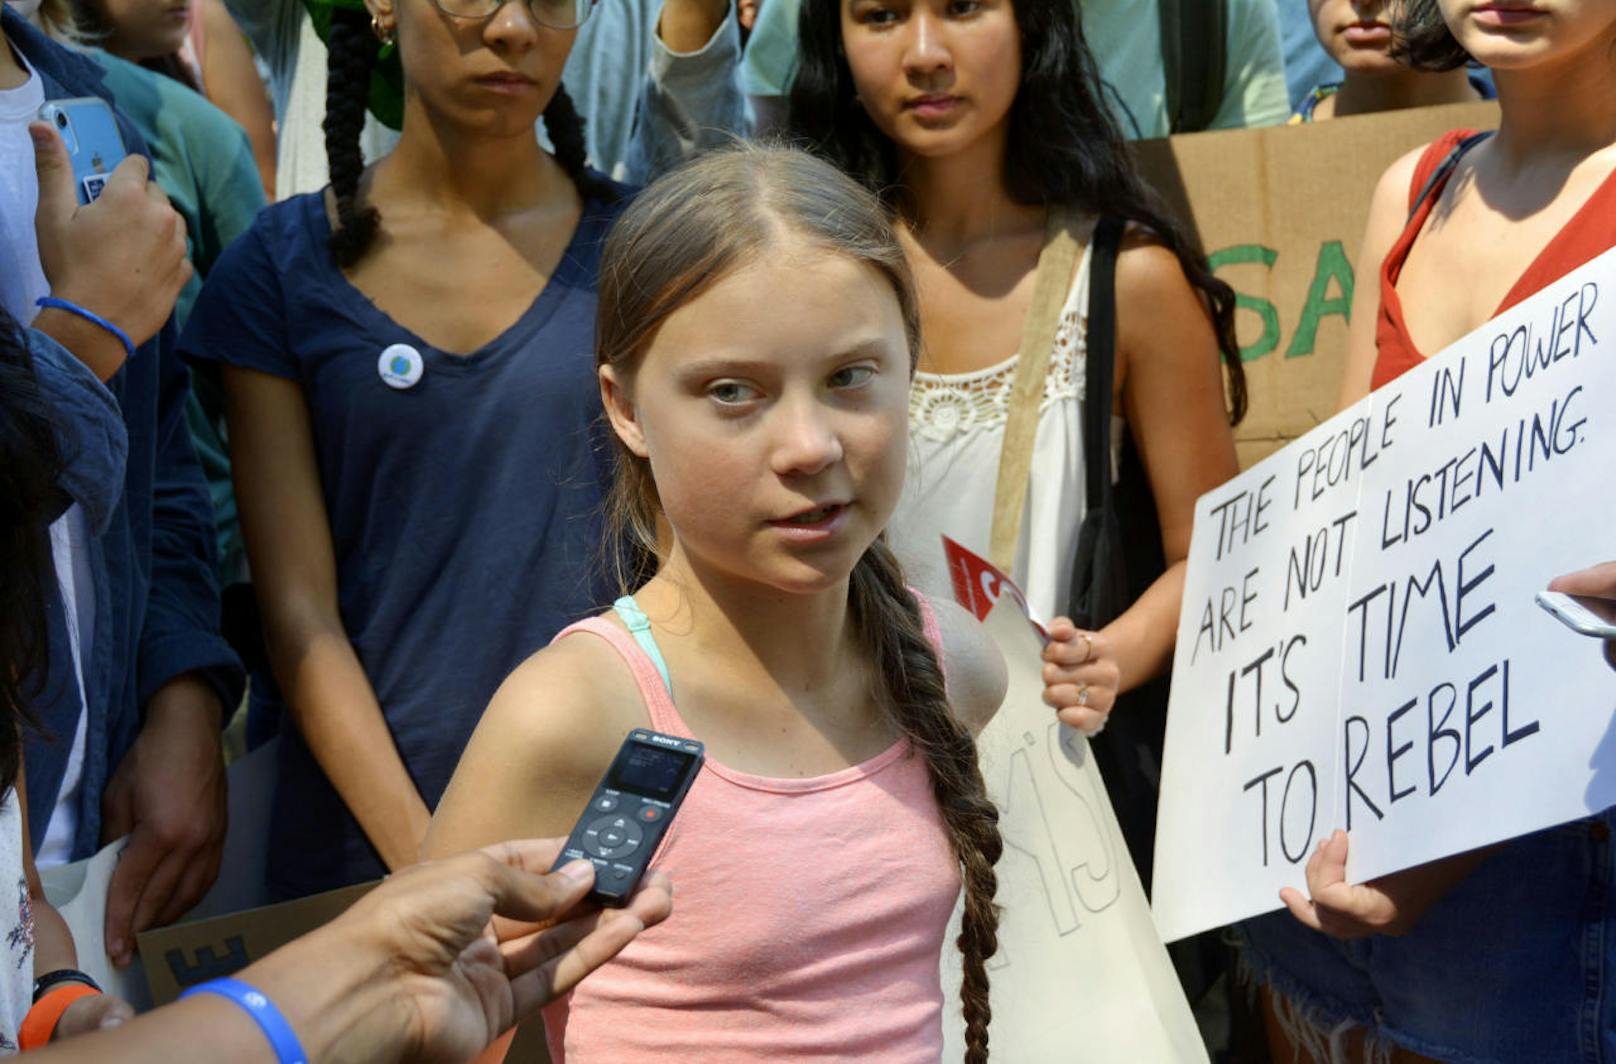 Außerdem fand am 31. August eine Fridays for Future Demonstration vor dem UNO-Hauptquartier in New York statt, an dem auch Greta Thunberg teilnahm.